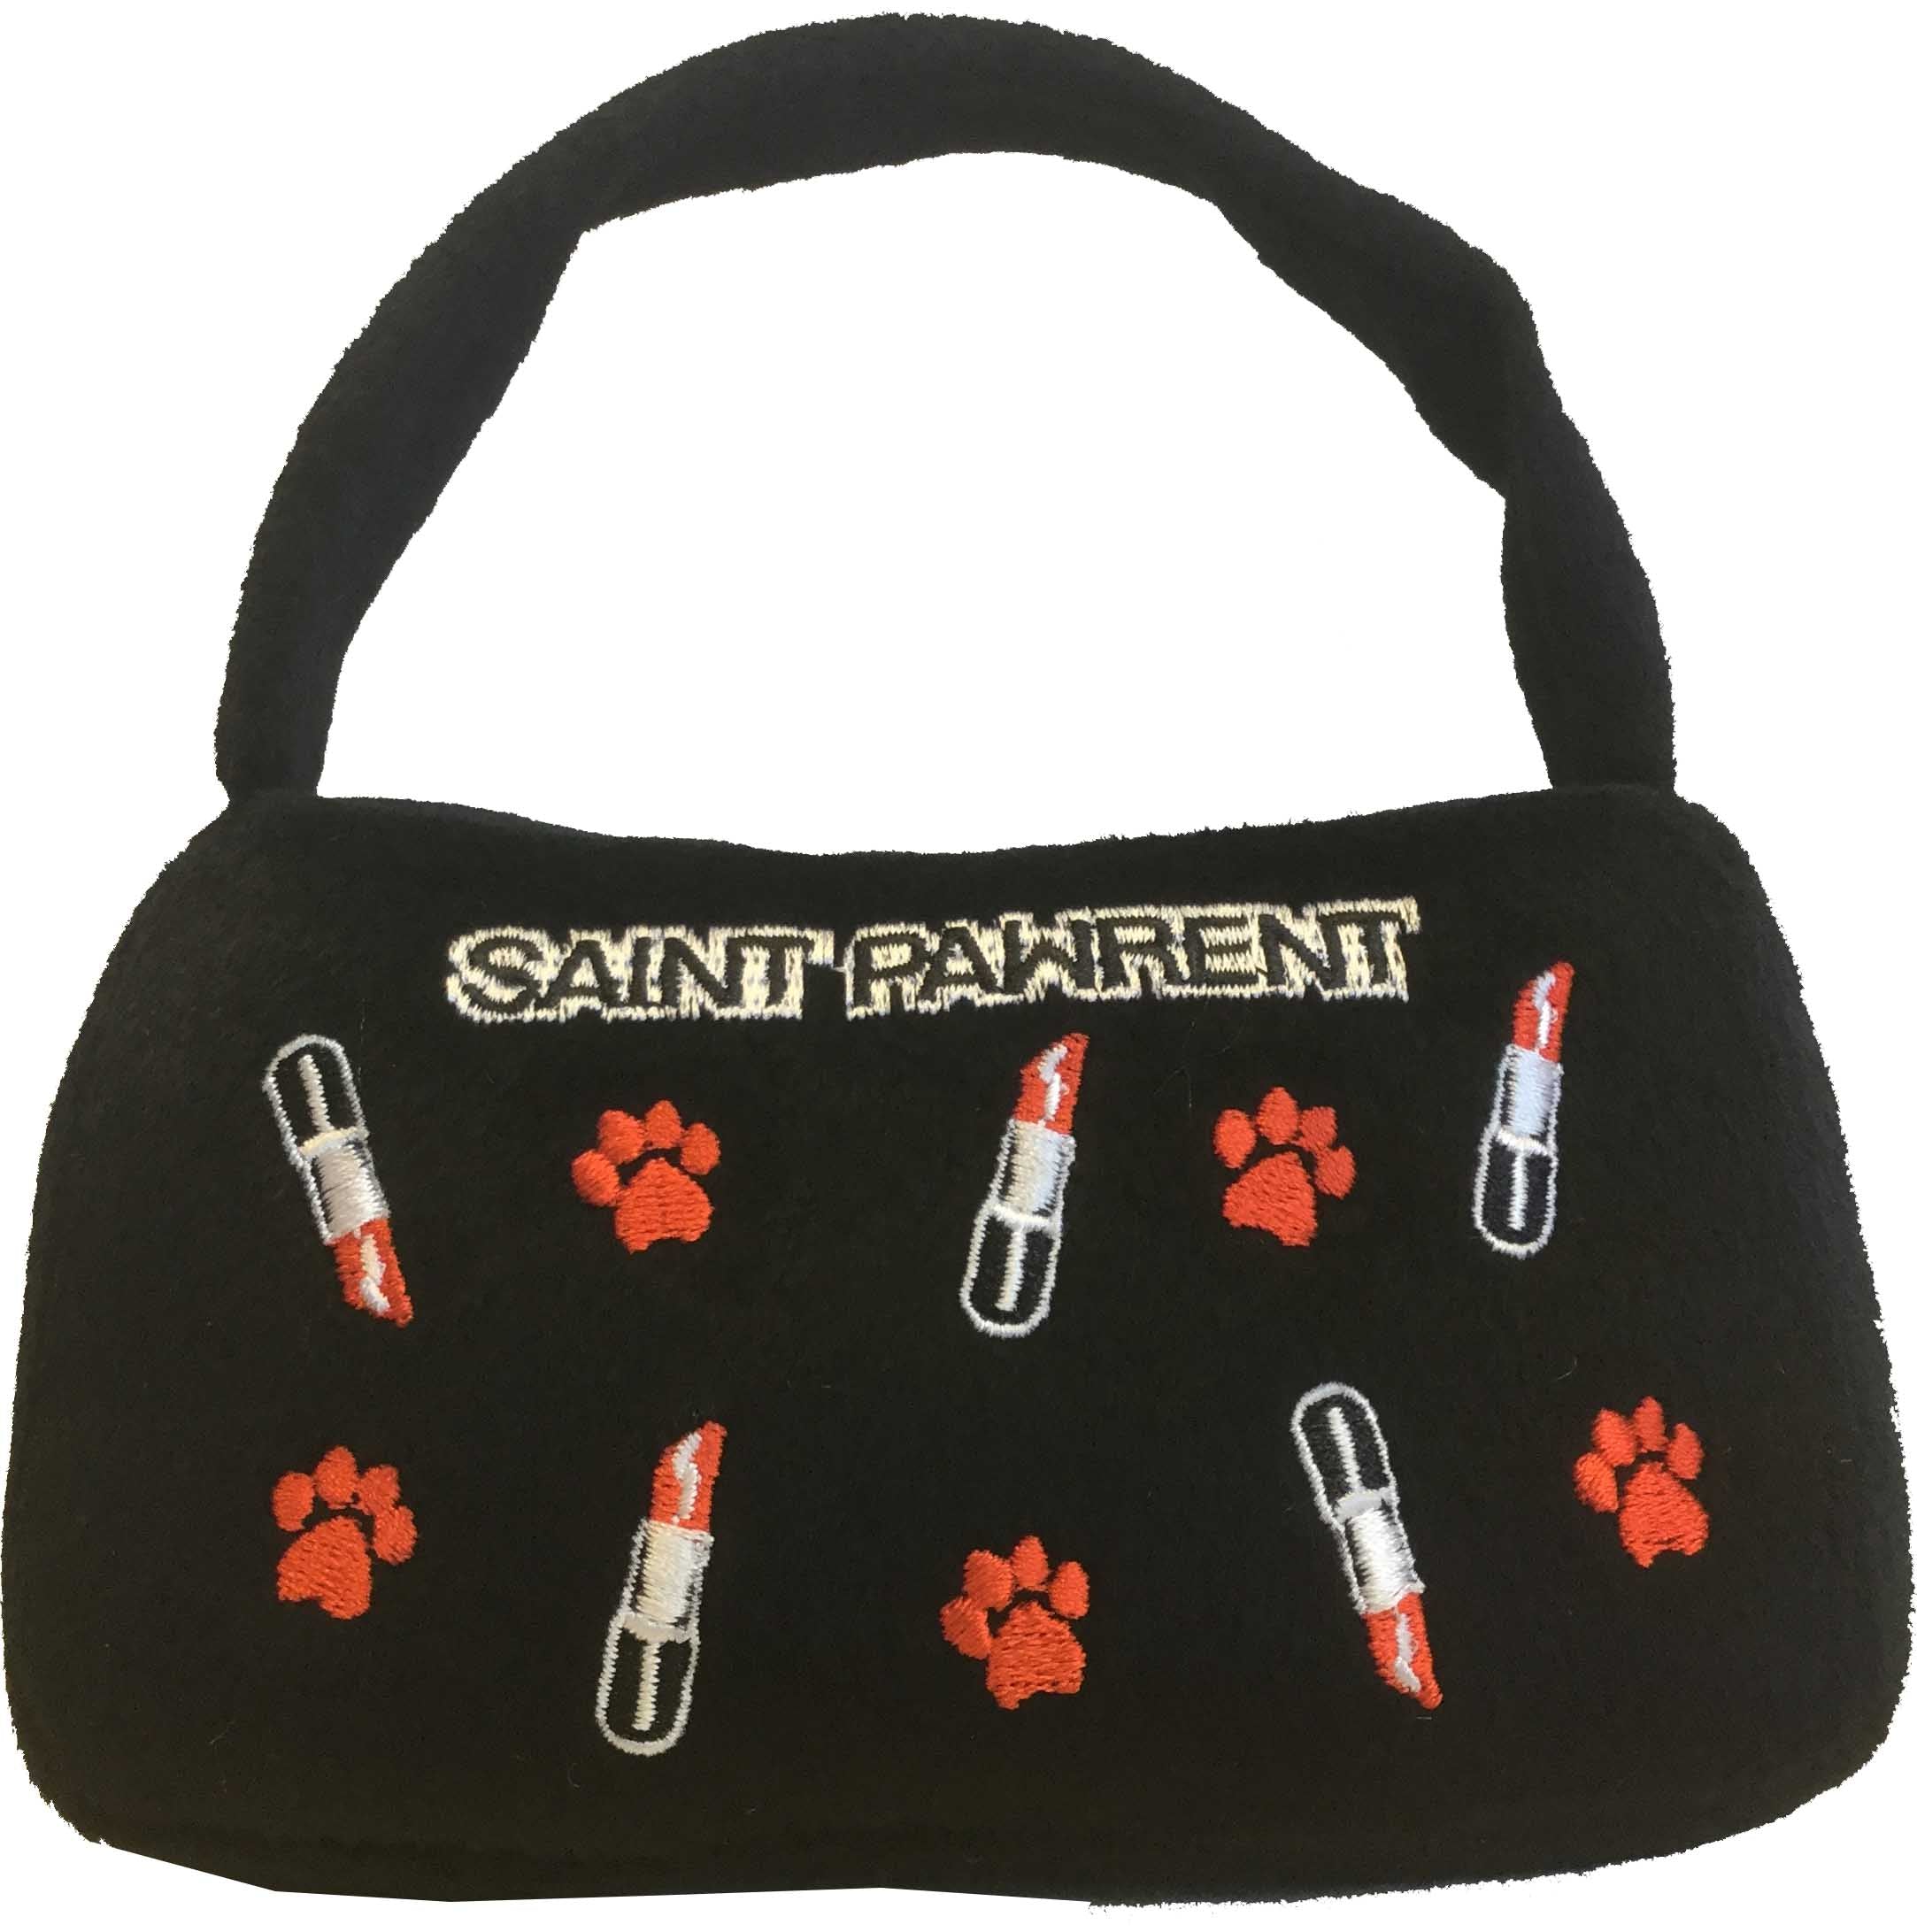 Dog Toy - Designer Bag